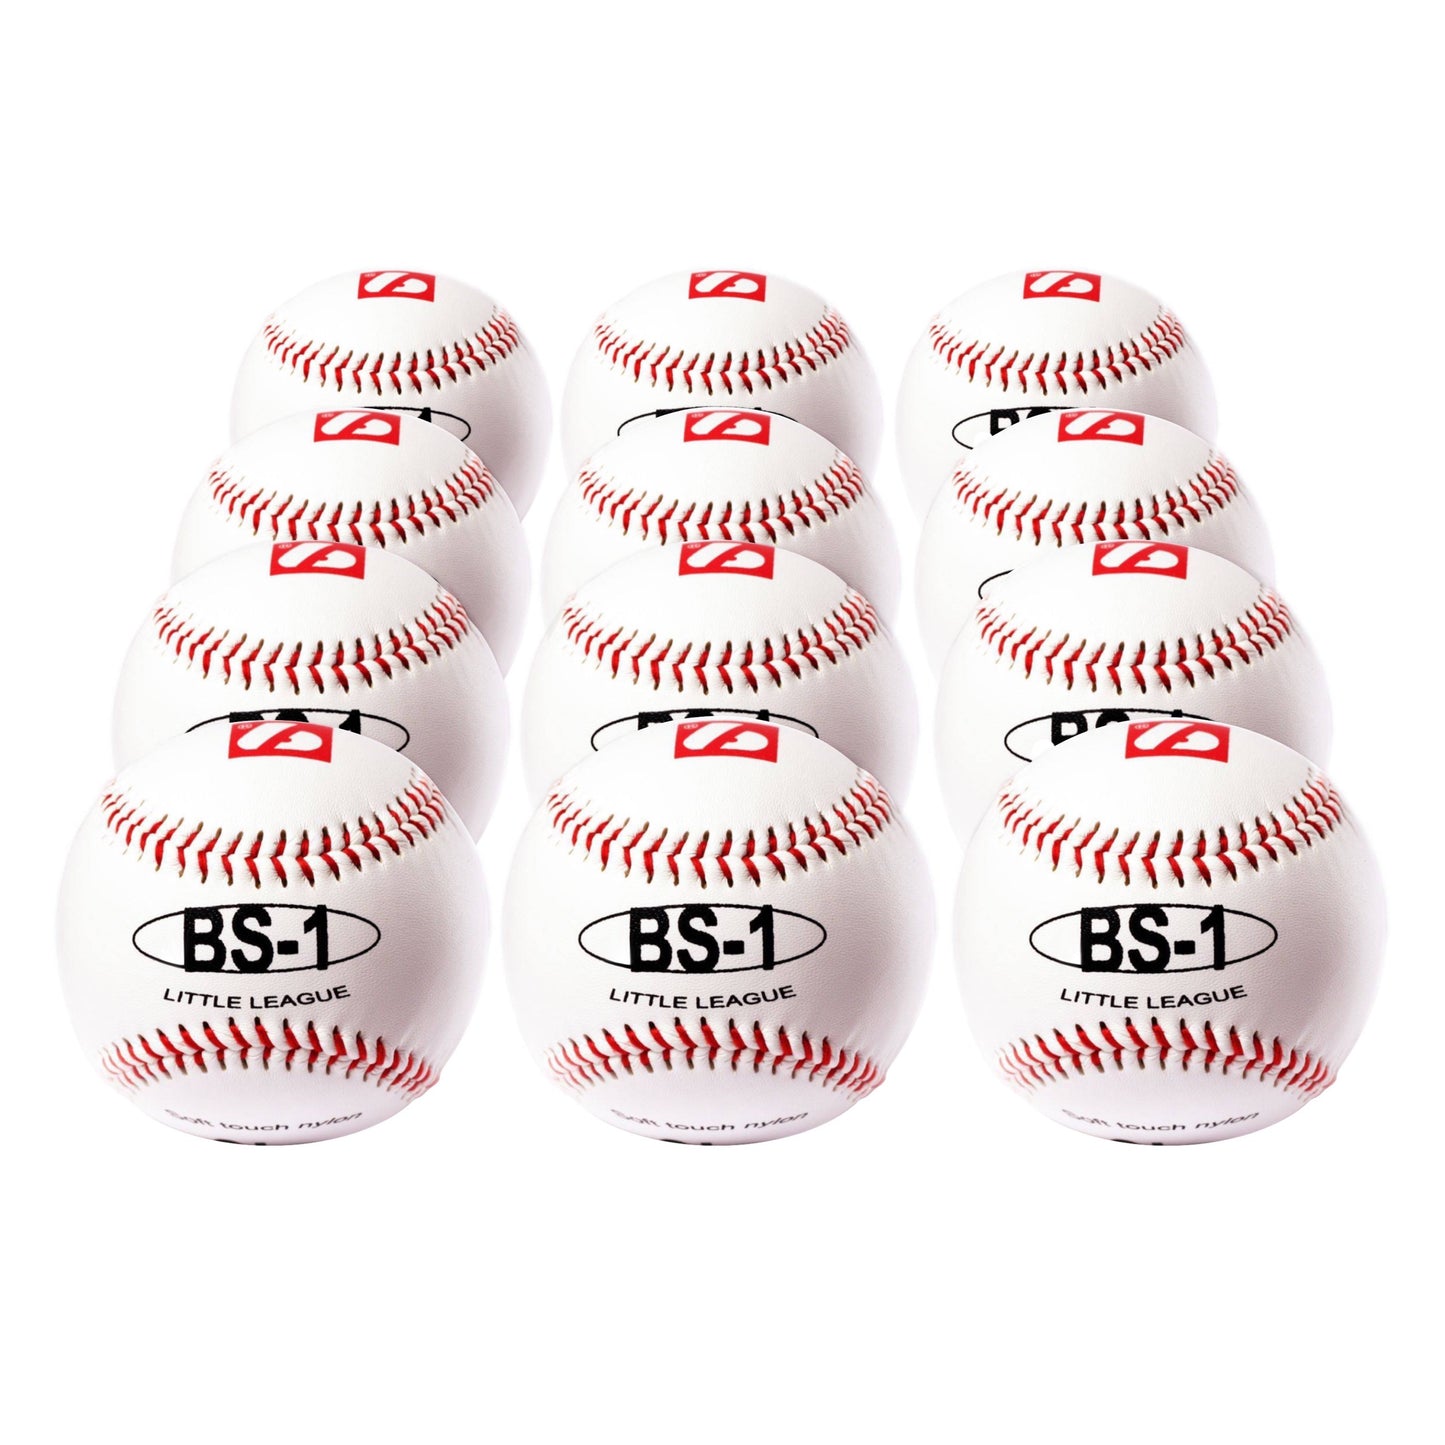 BS-1 Baseball Ball Anfänger Baseball, Softtouch, Größe 9" (inch), Farbe weiß, 12 Stück (1 Dutzend)